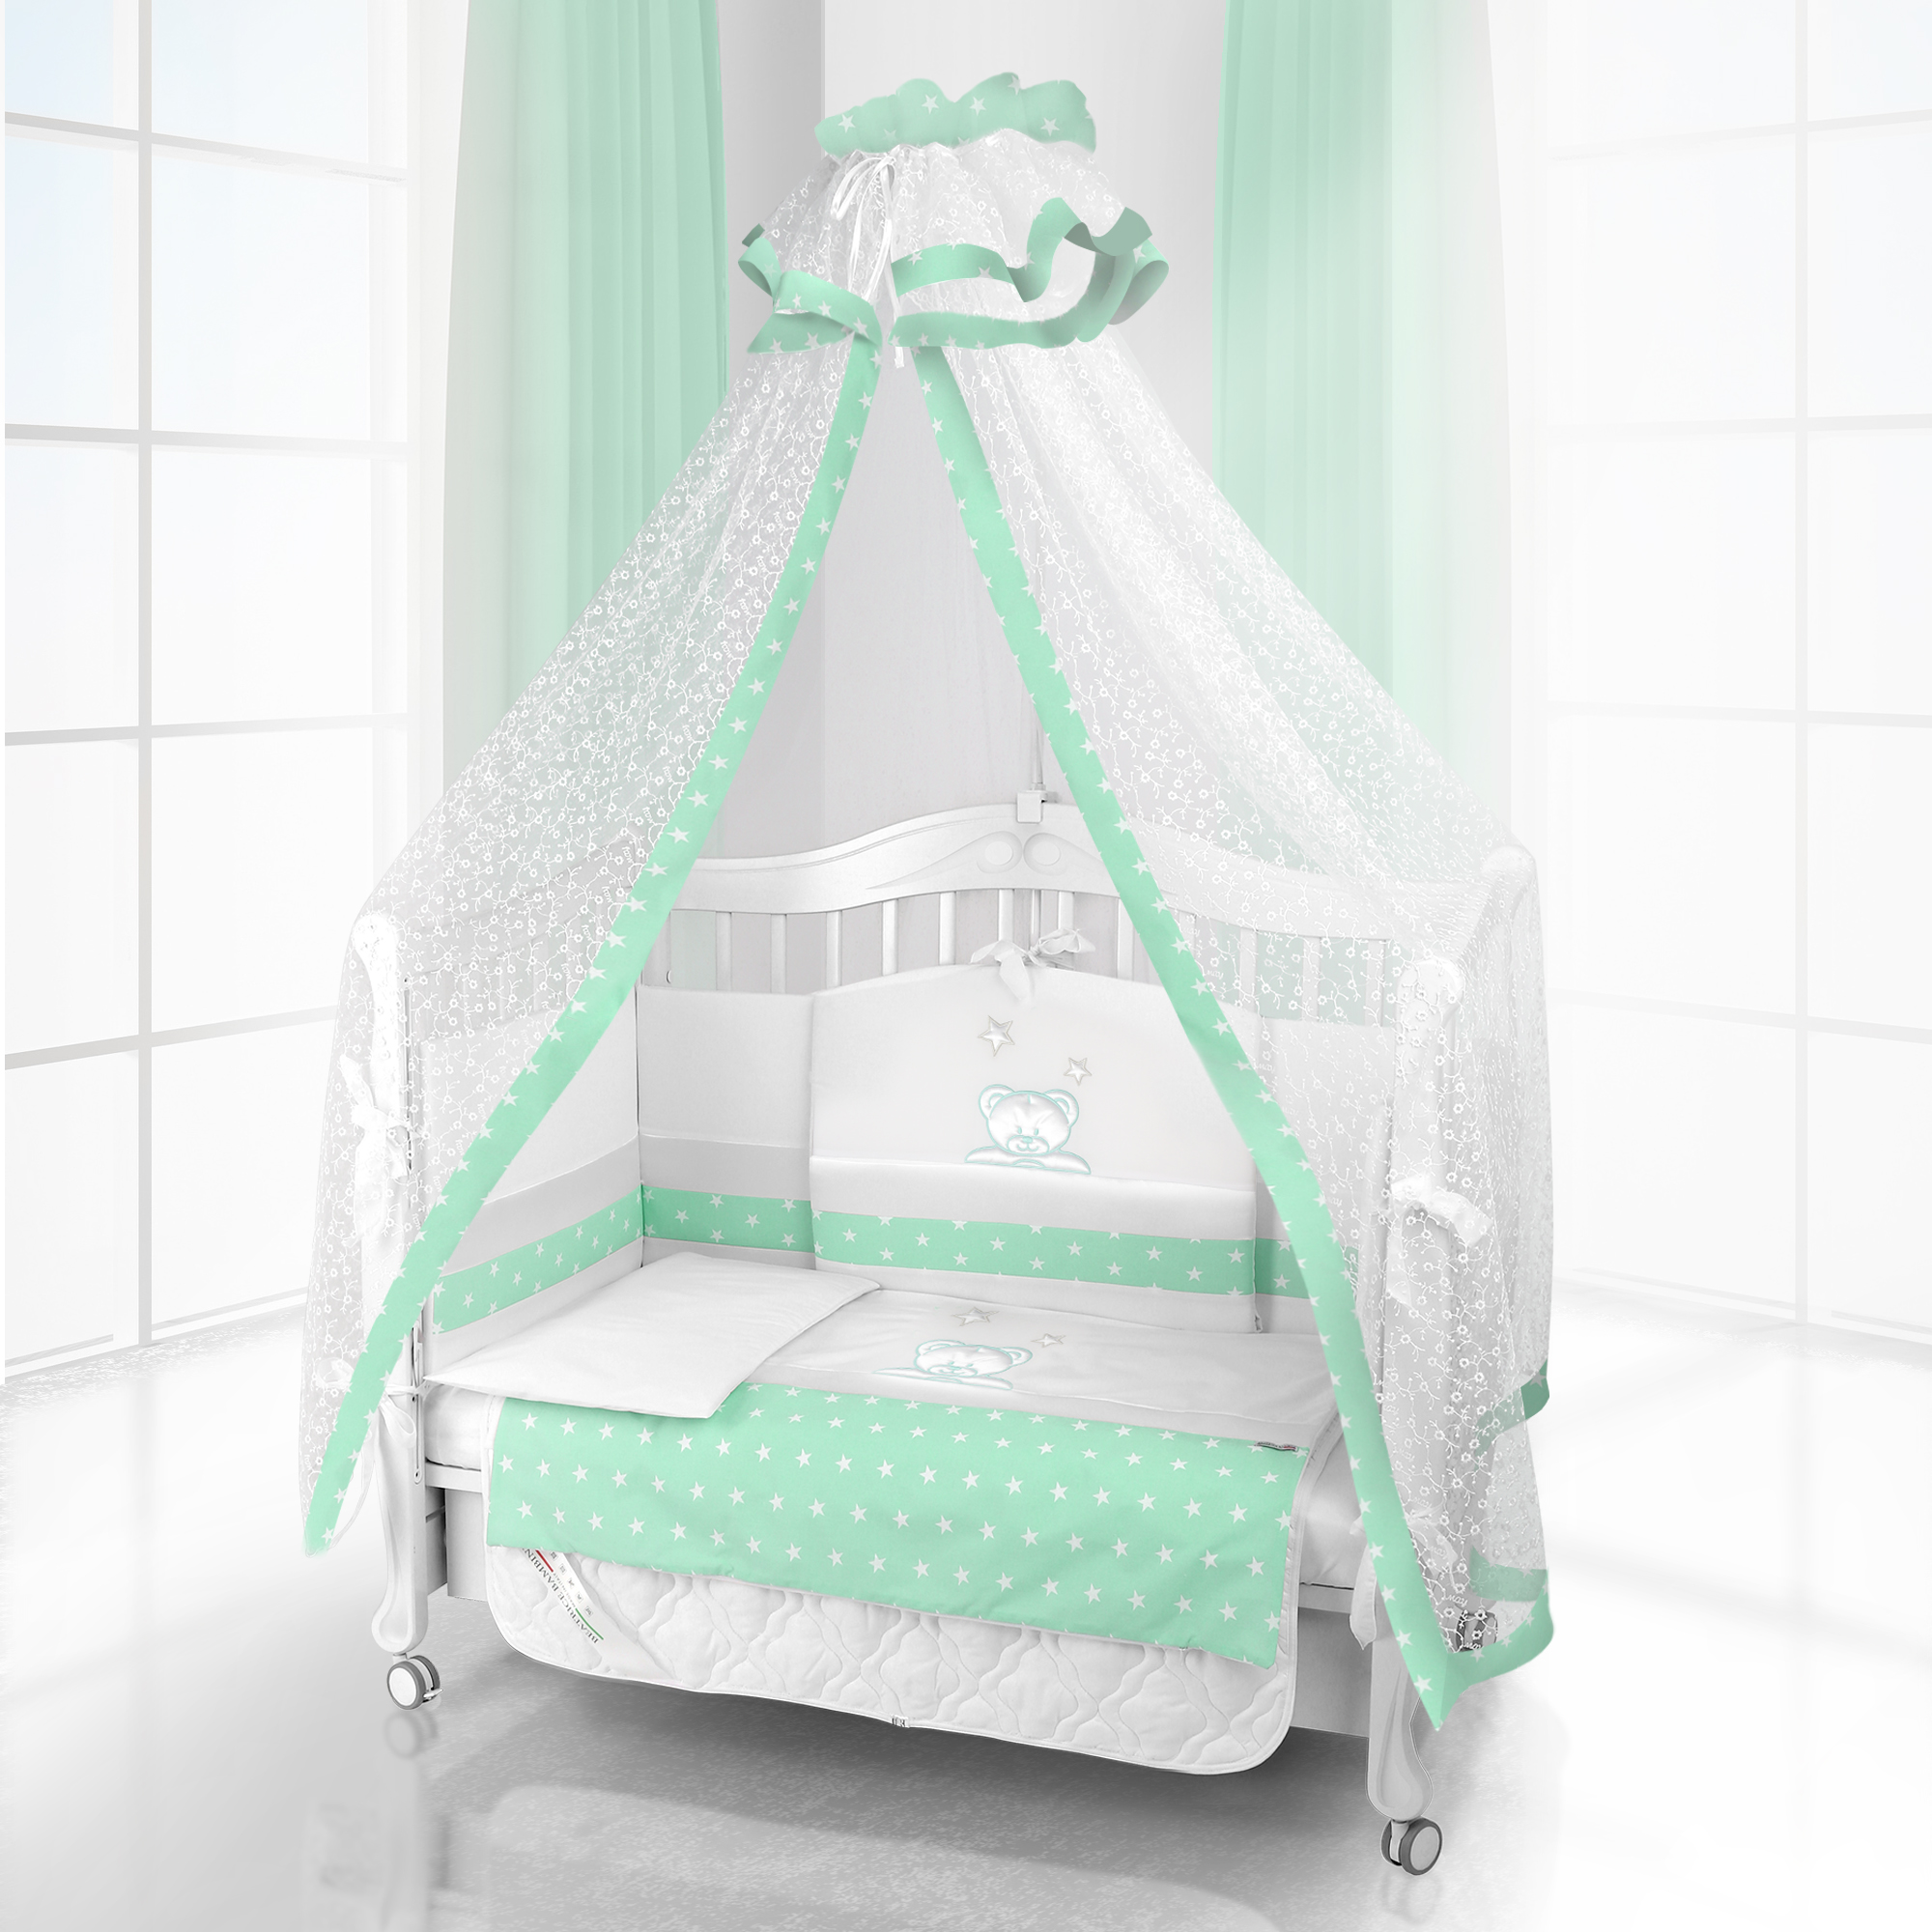 Комплект постельного белья Beatrice Bambini Unico Capolino (125х65) (bianco verde)